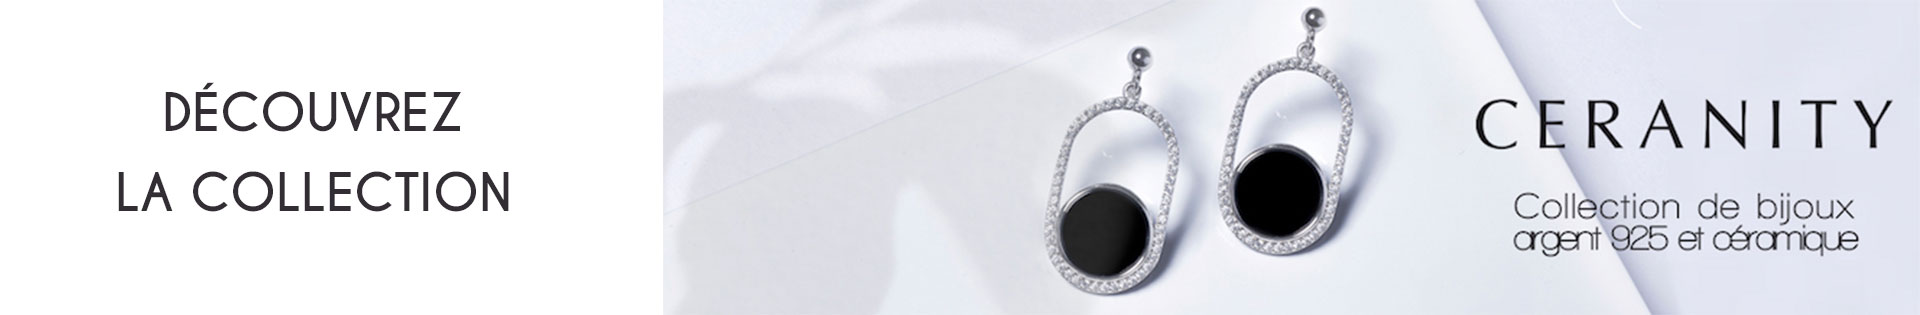 Boucles d'oreille - Ceranity Silver - plaqué or - oxyde de zirconium